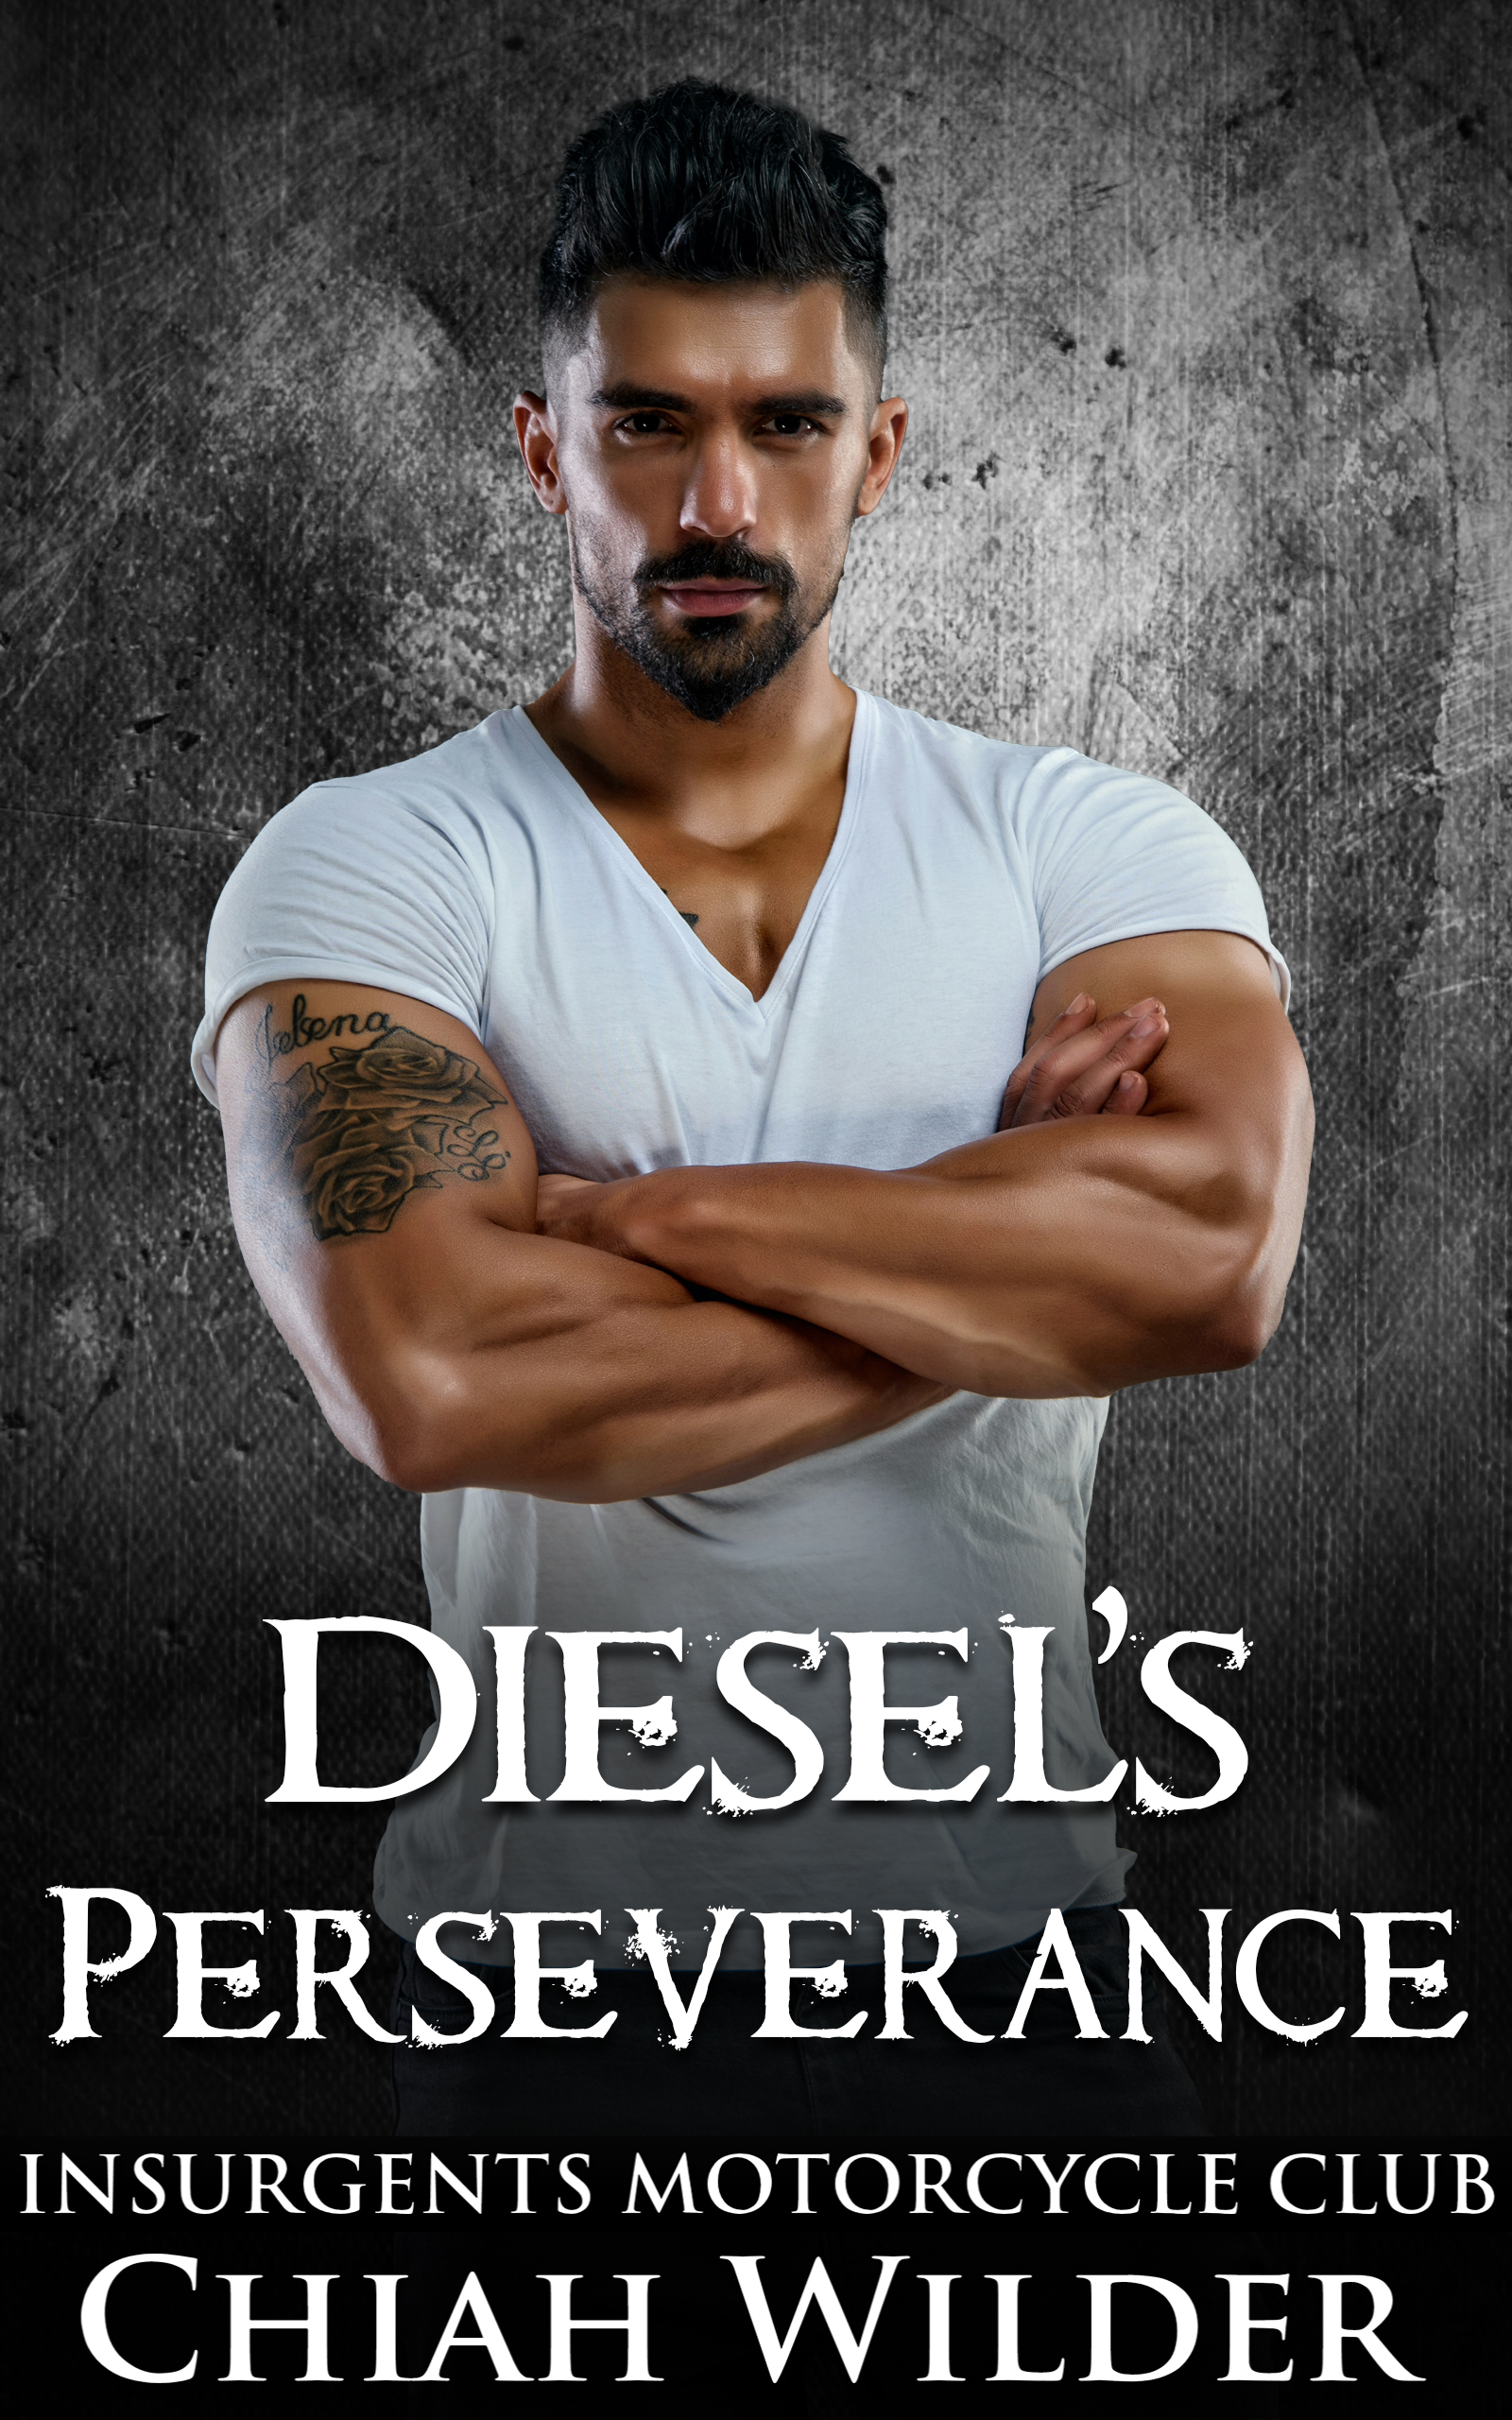 Diesel’s Perseverance